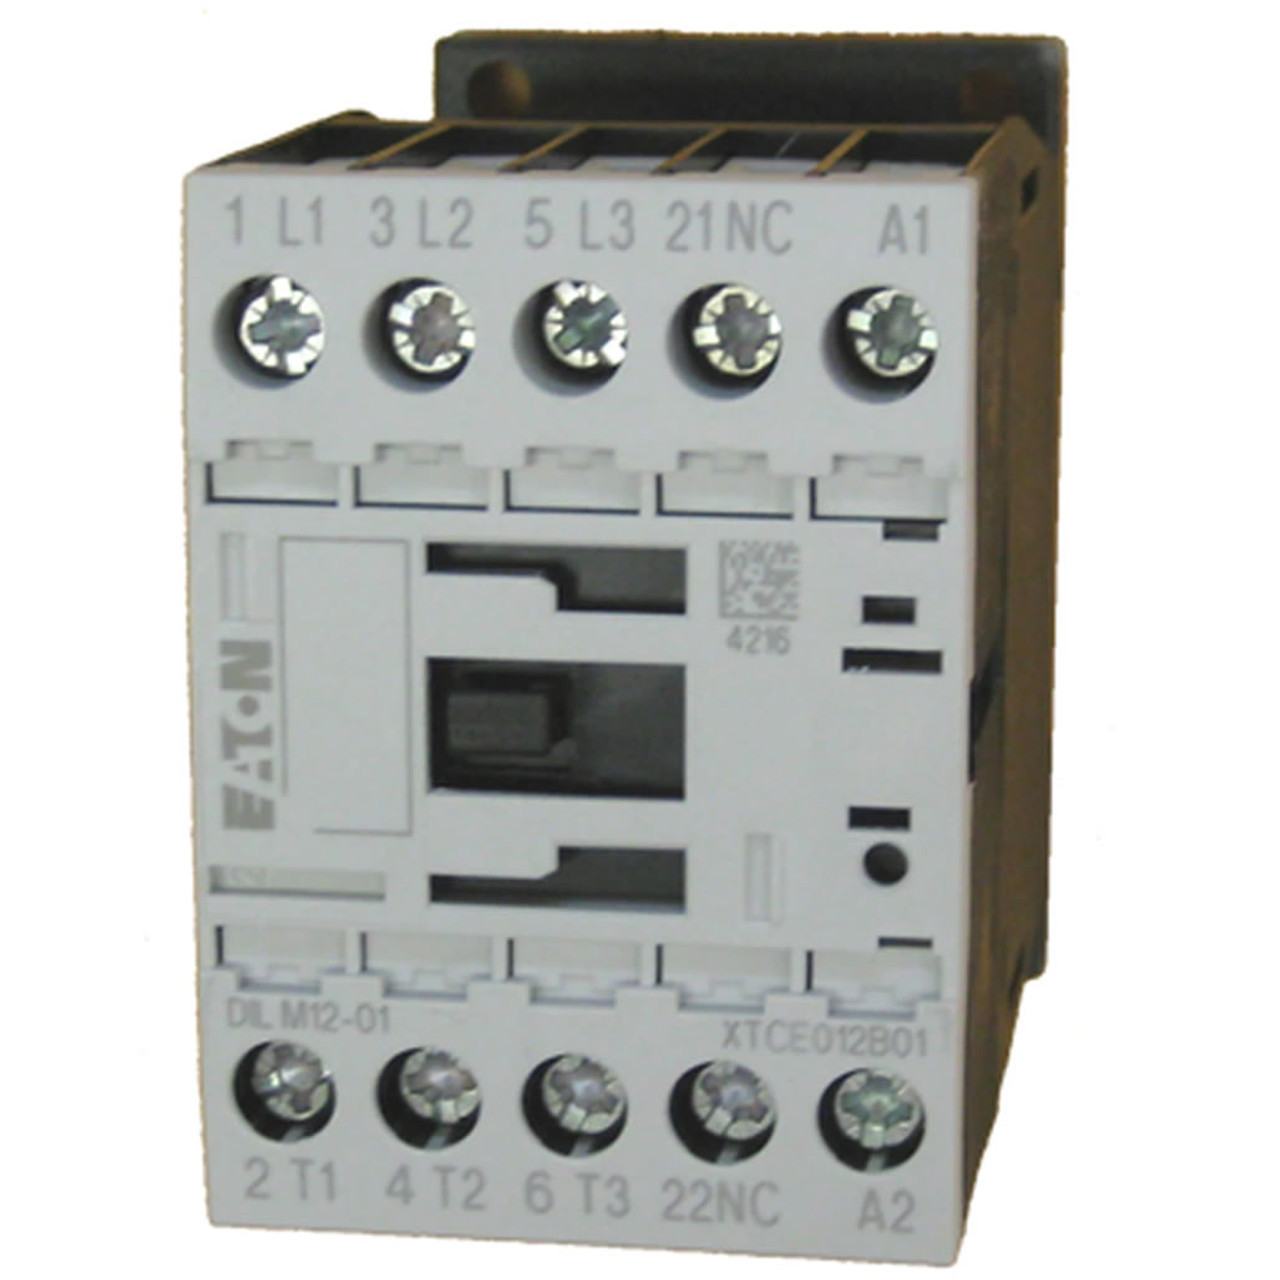 Eaton XTCE012B01B contactor